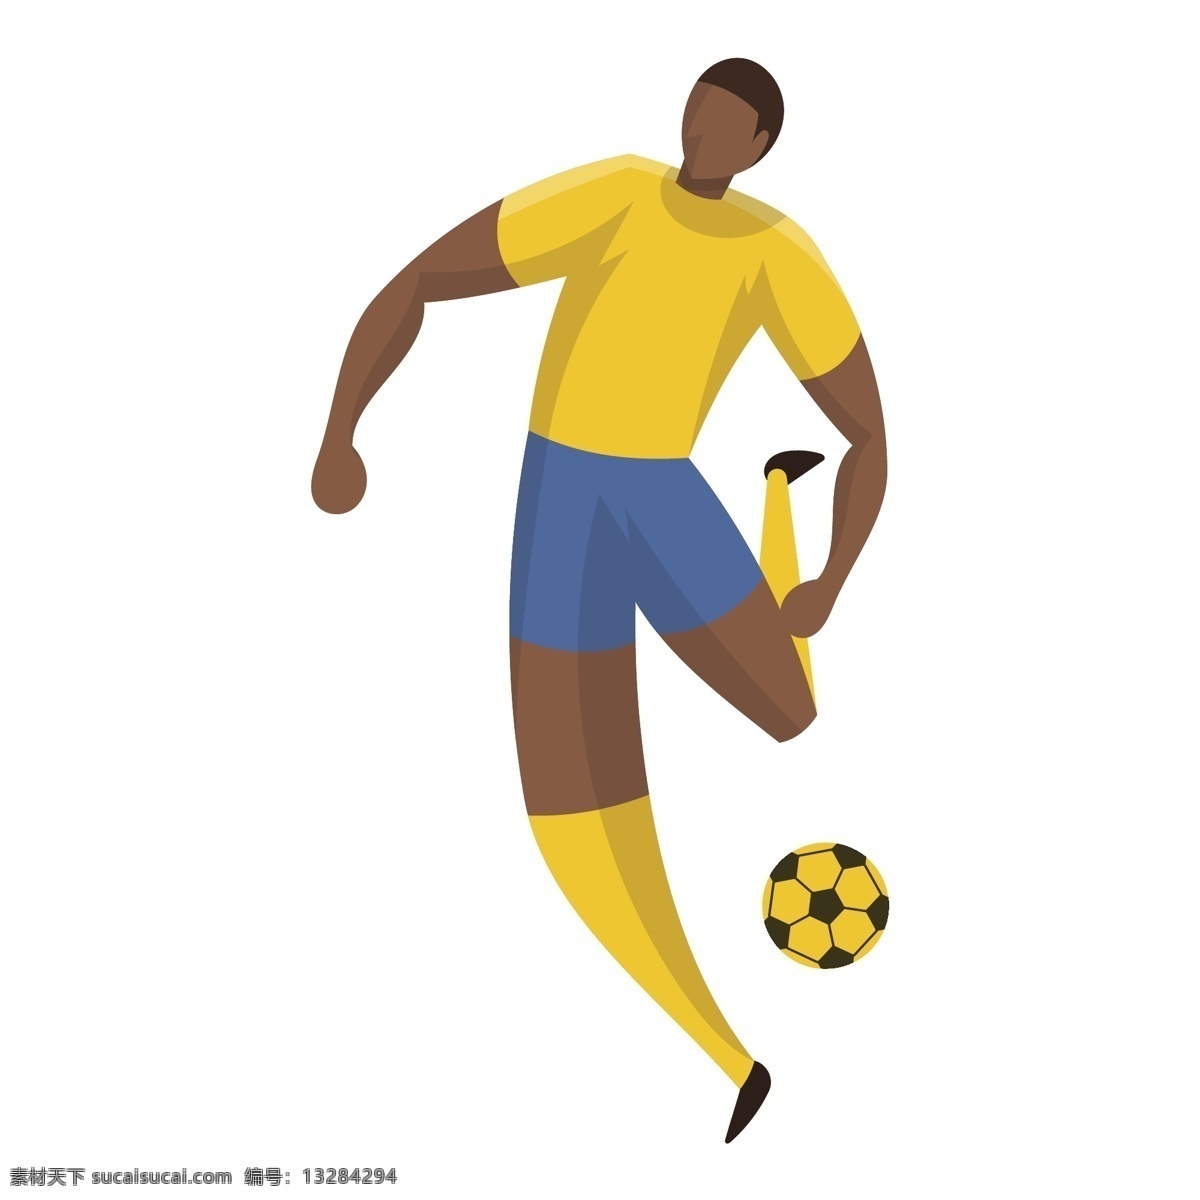 足球 巴西 矢量 足球运动员 运动员 卡通 卡通运动员 可爱 可爱运动员 体育 体育运动员 巴西足球